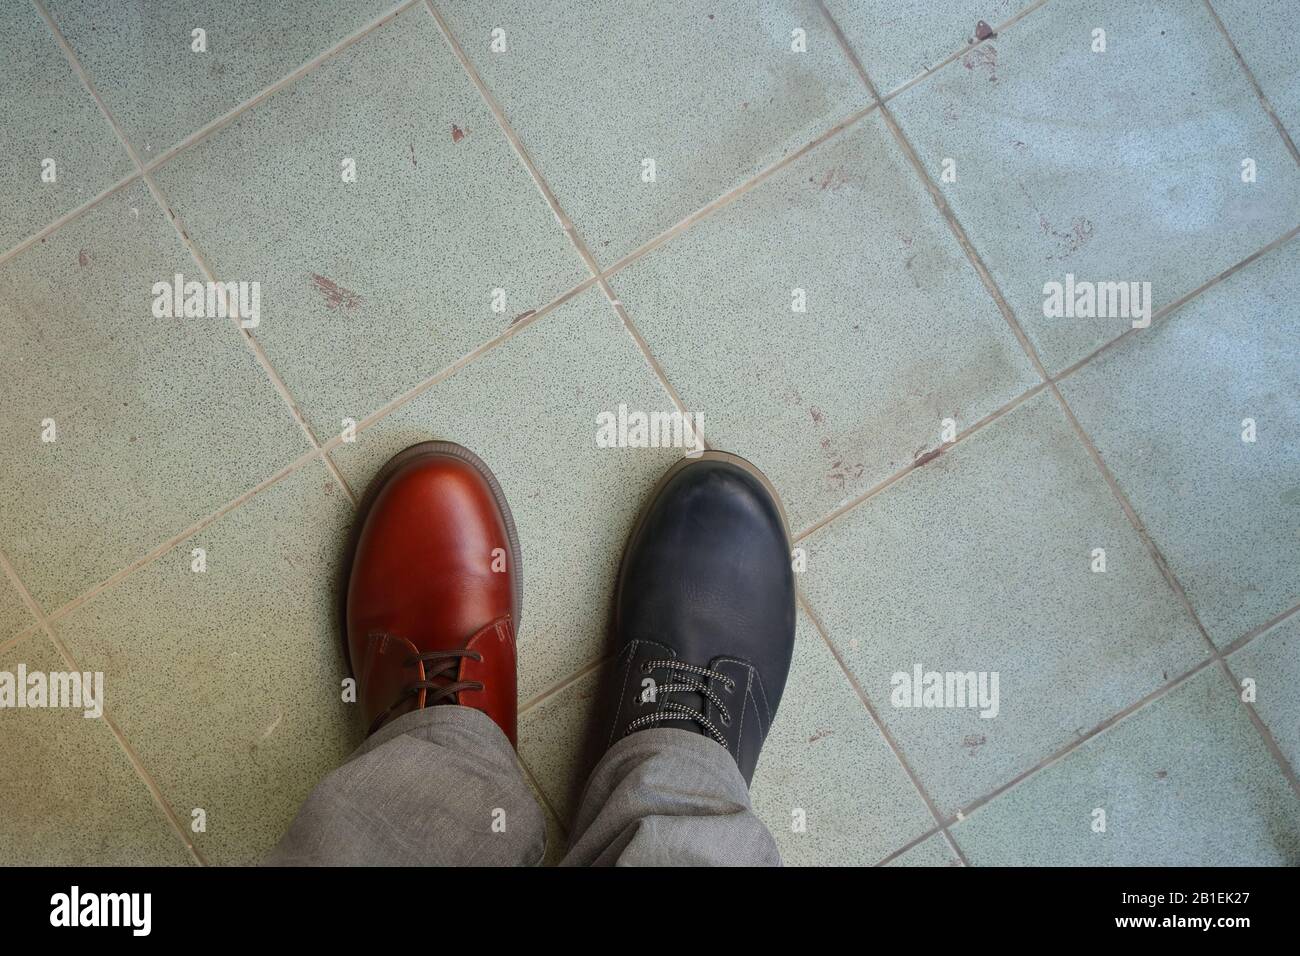 Das Obermaterial aus zusammenpassenden Schuhen, ein Mann, der zwei verschiedene Schuhe und verschiedene Farben auf gefliestem Boden trägt, bricht die Regeln, revolutioniert die Metaphik Stockfoto